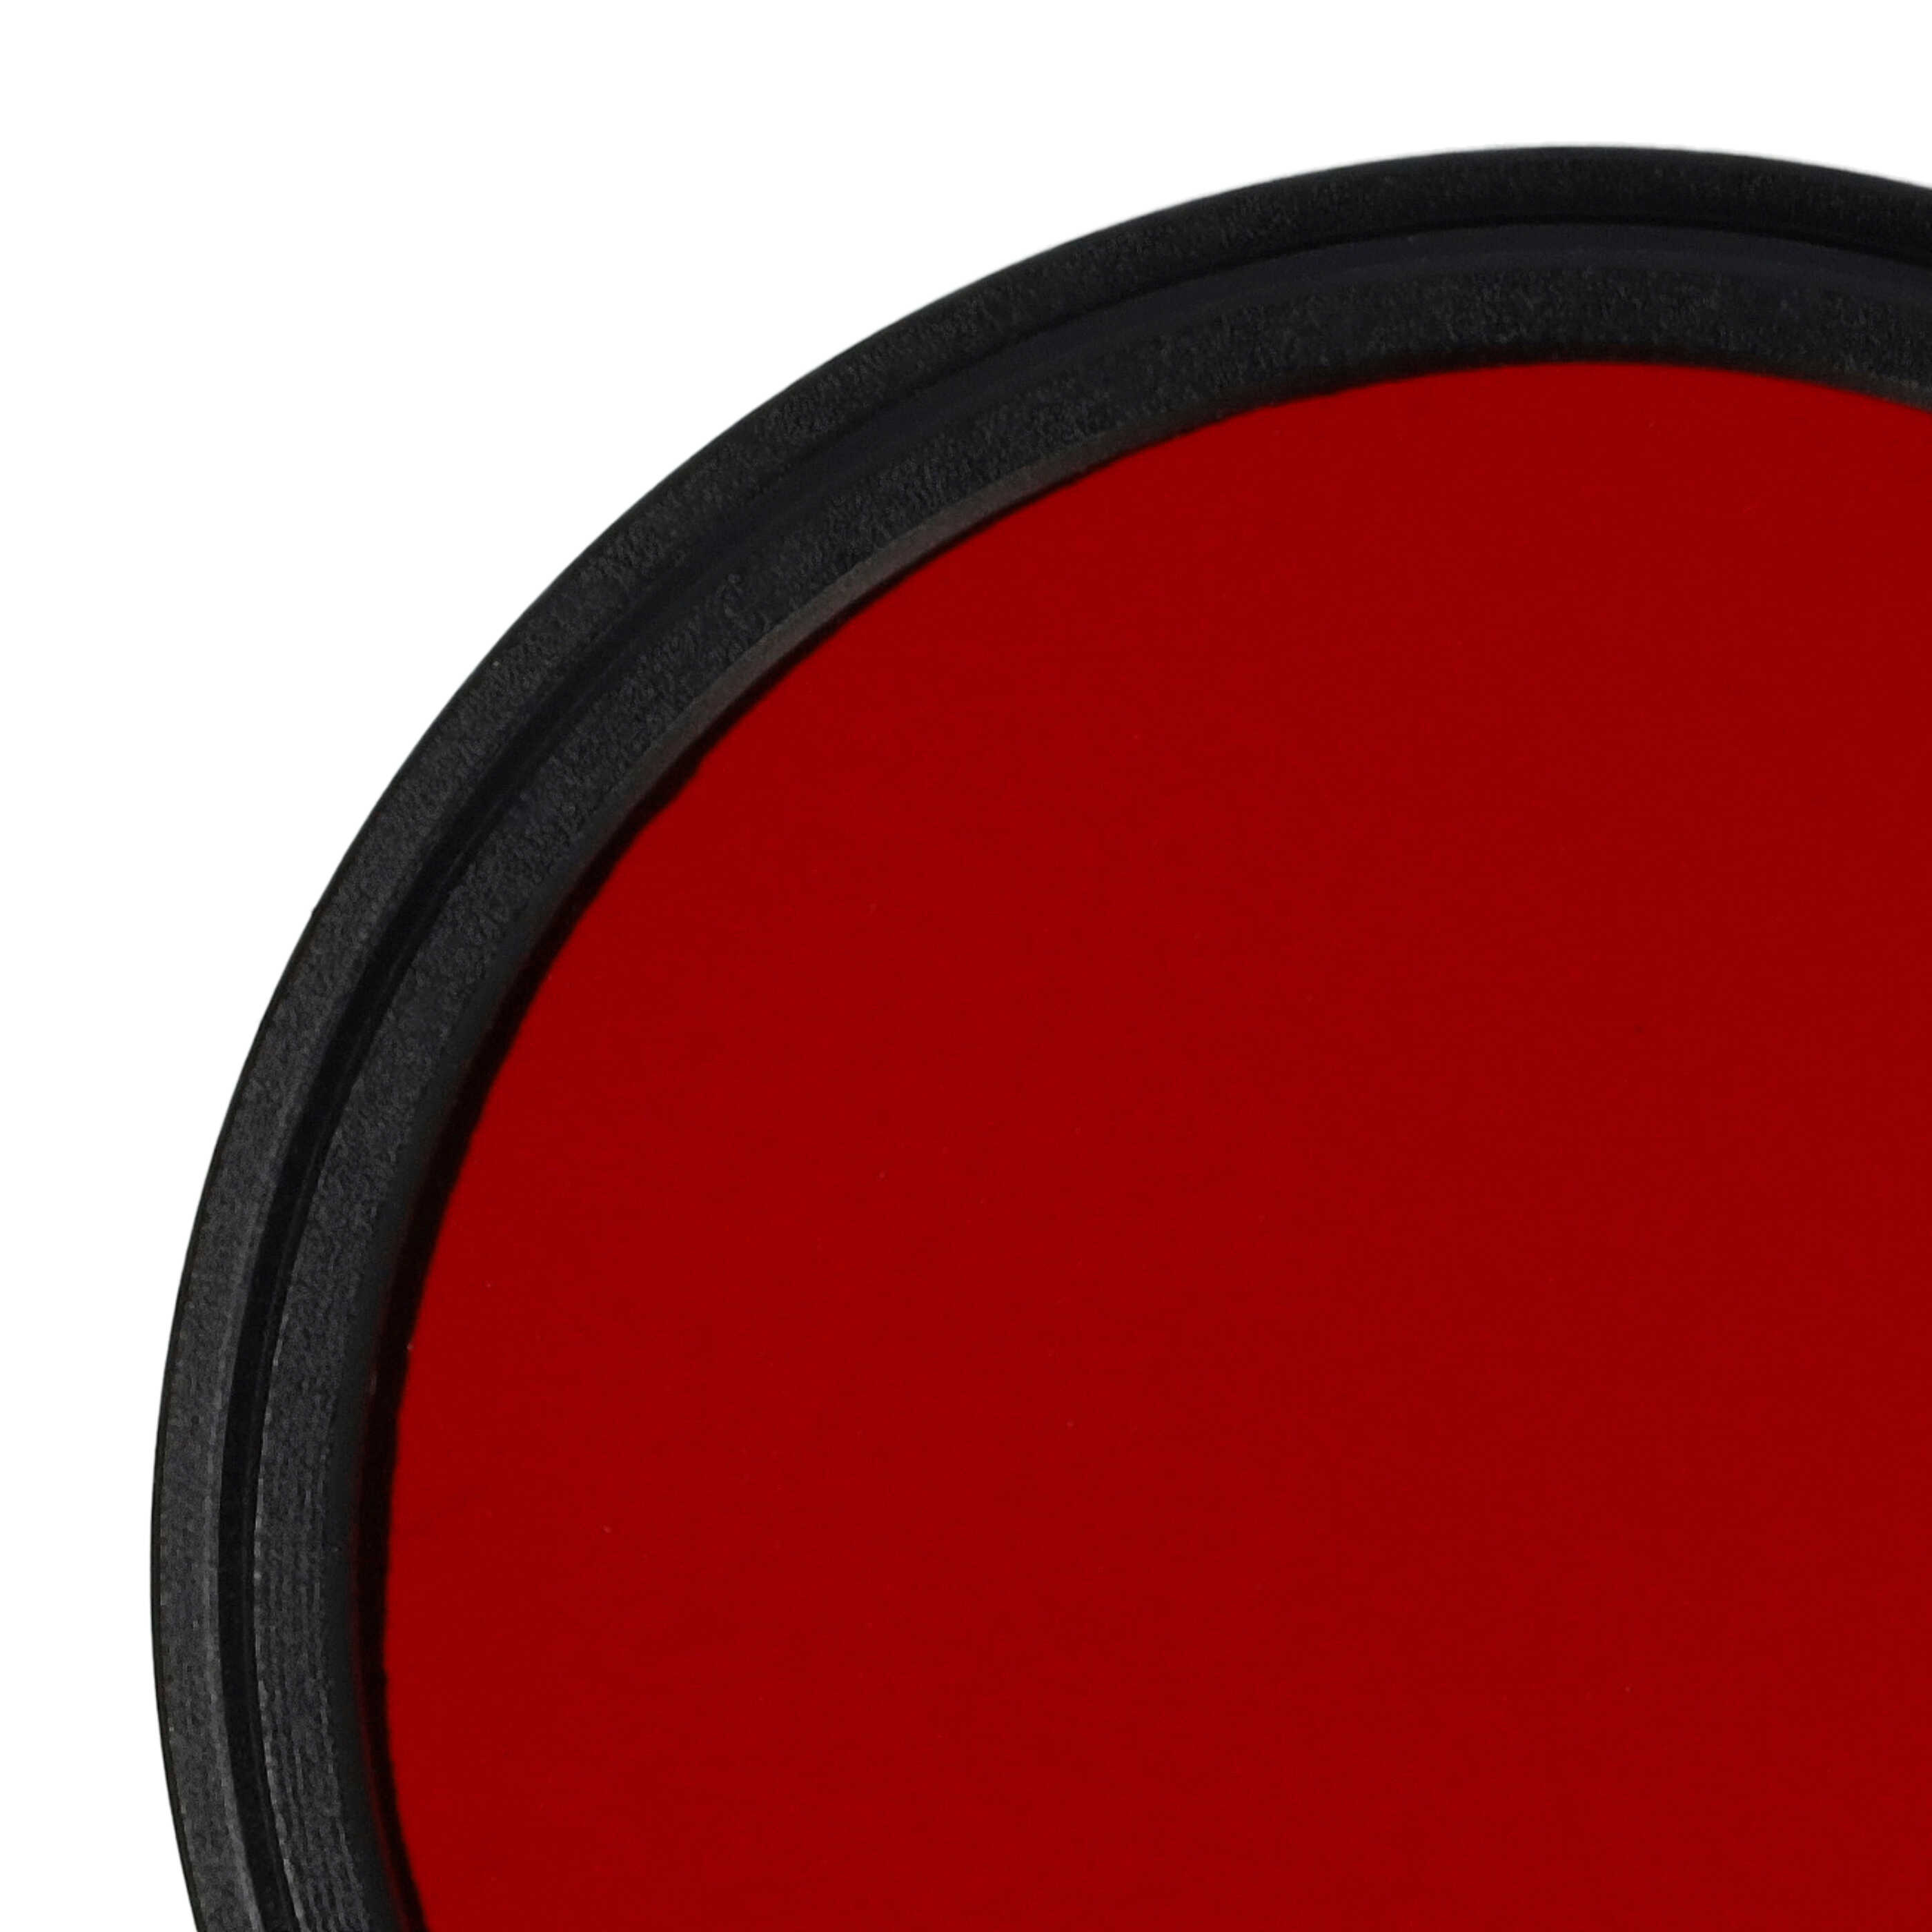 Filtre de couleur rouge pour objectifs d'appareils photo de 46 mm - Filtre rouge